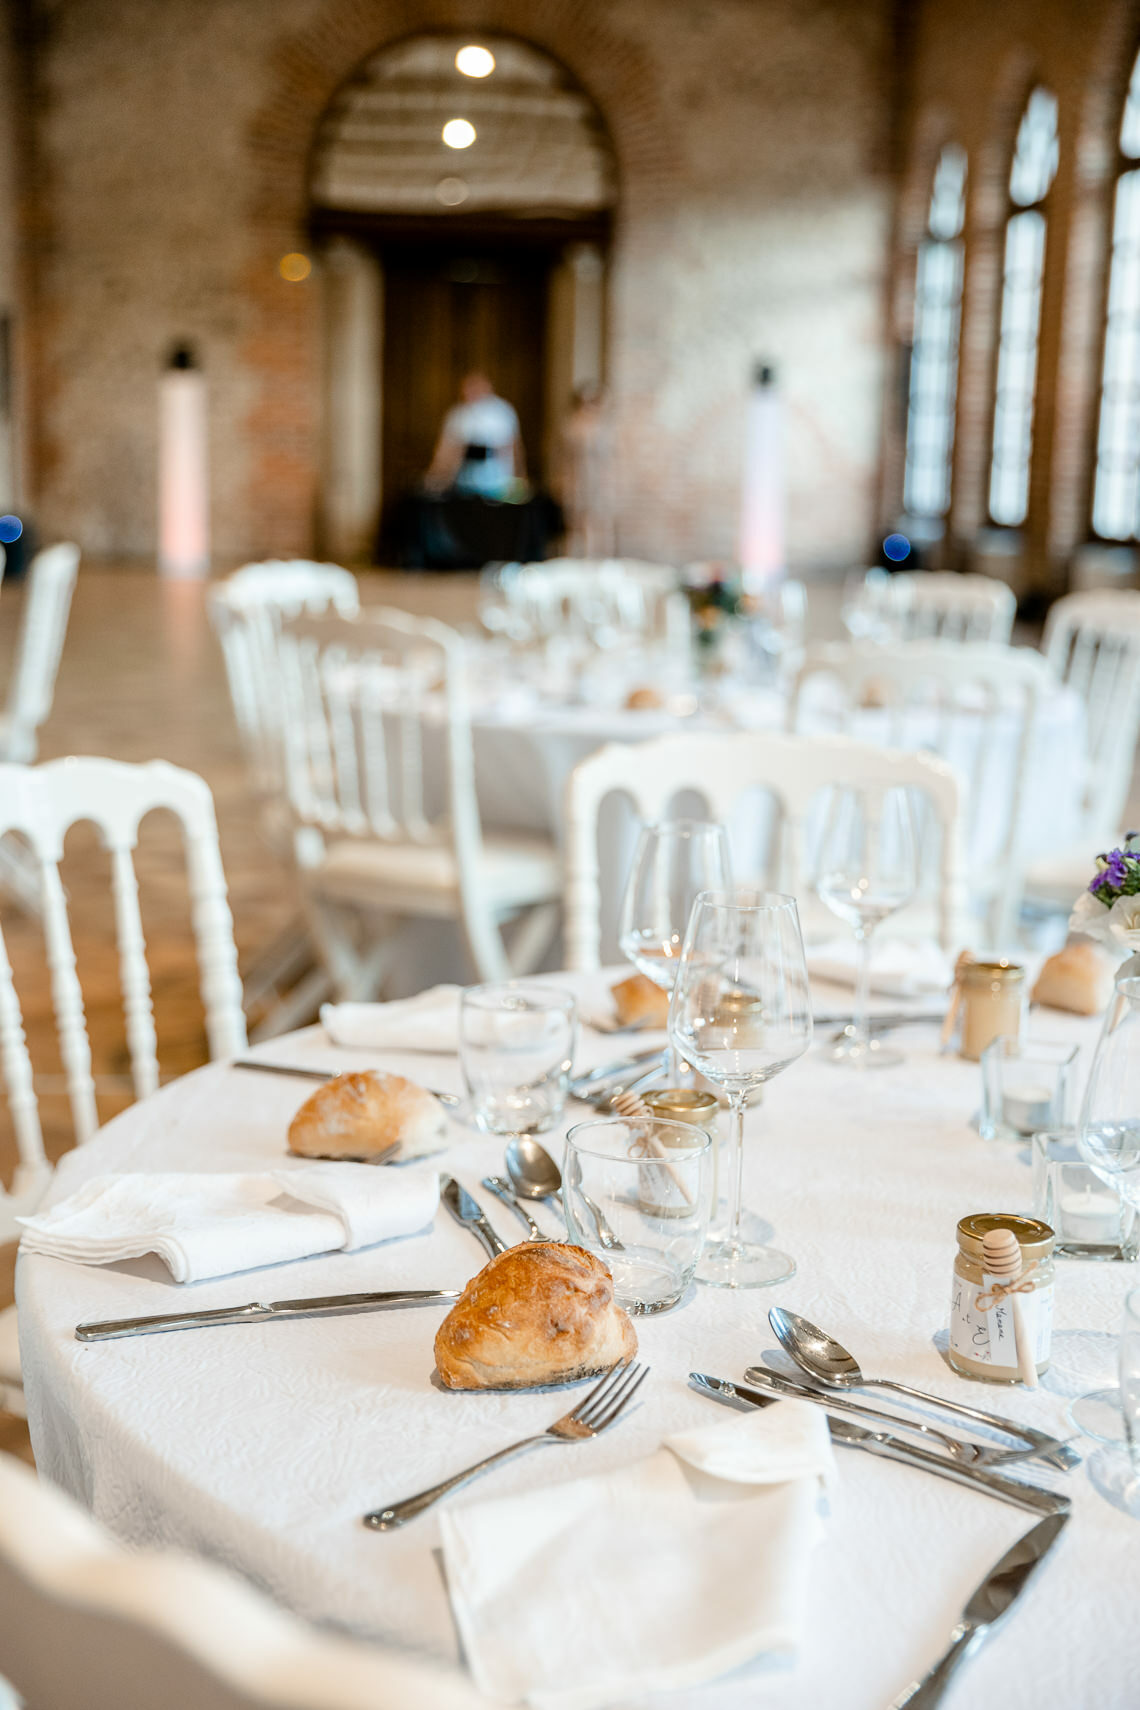 décoration table mariage corail et turquoise